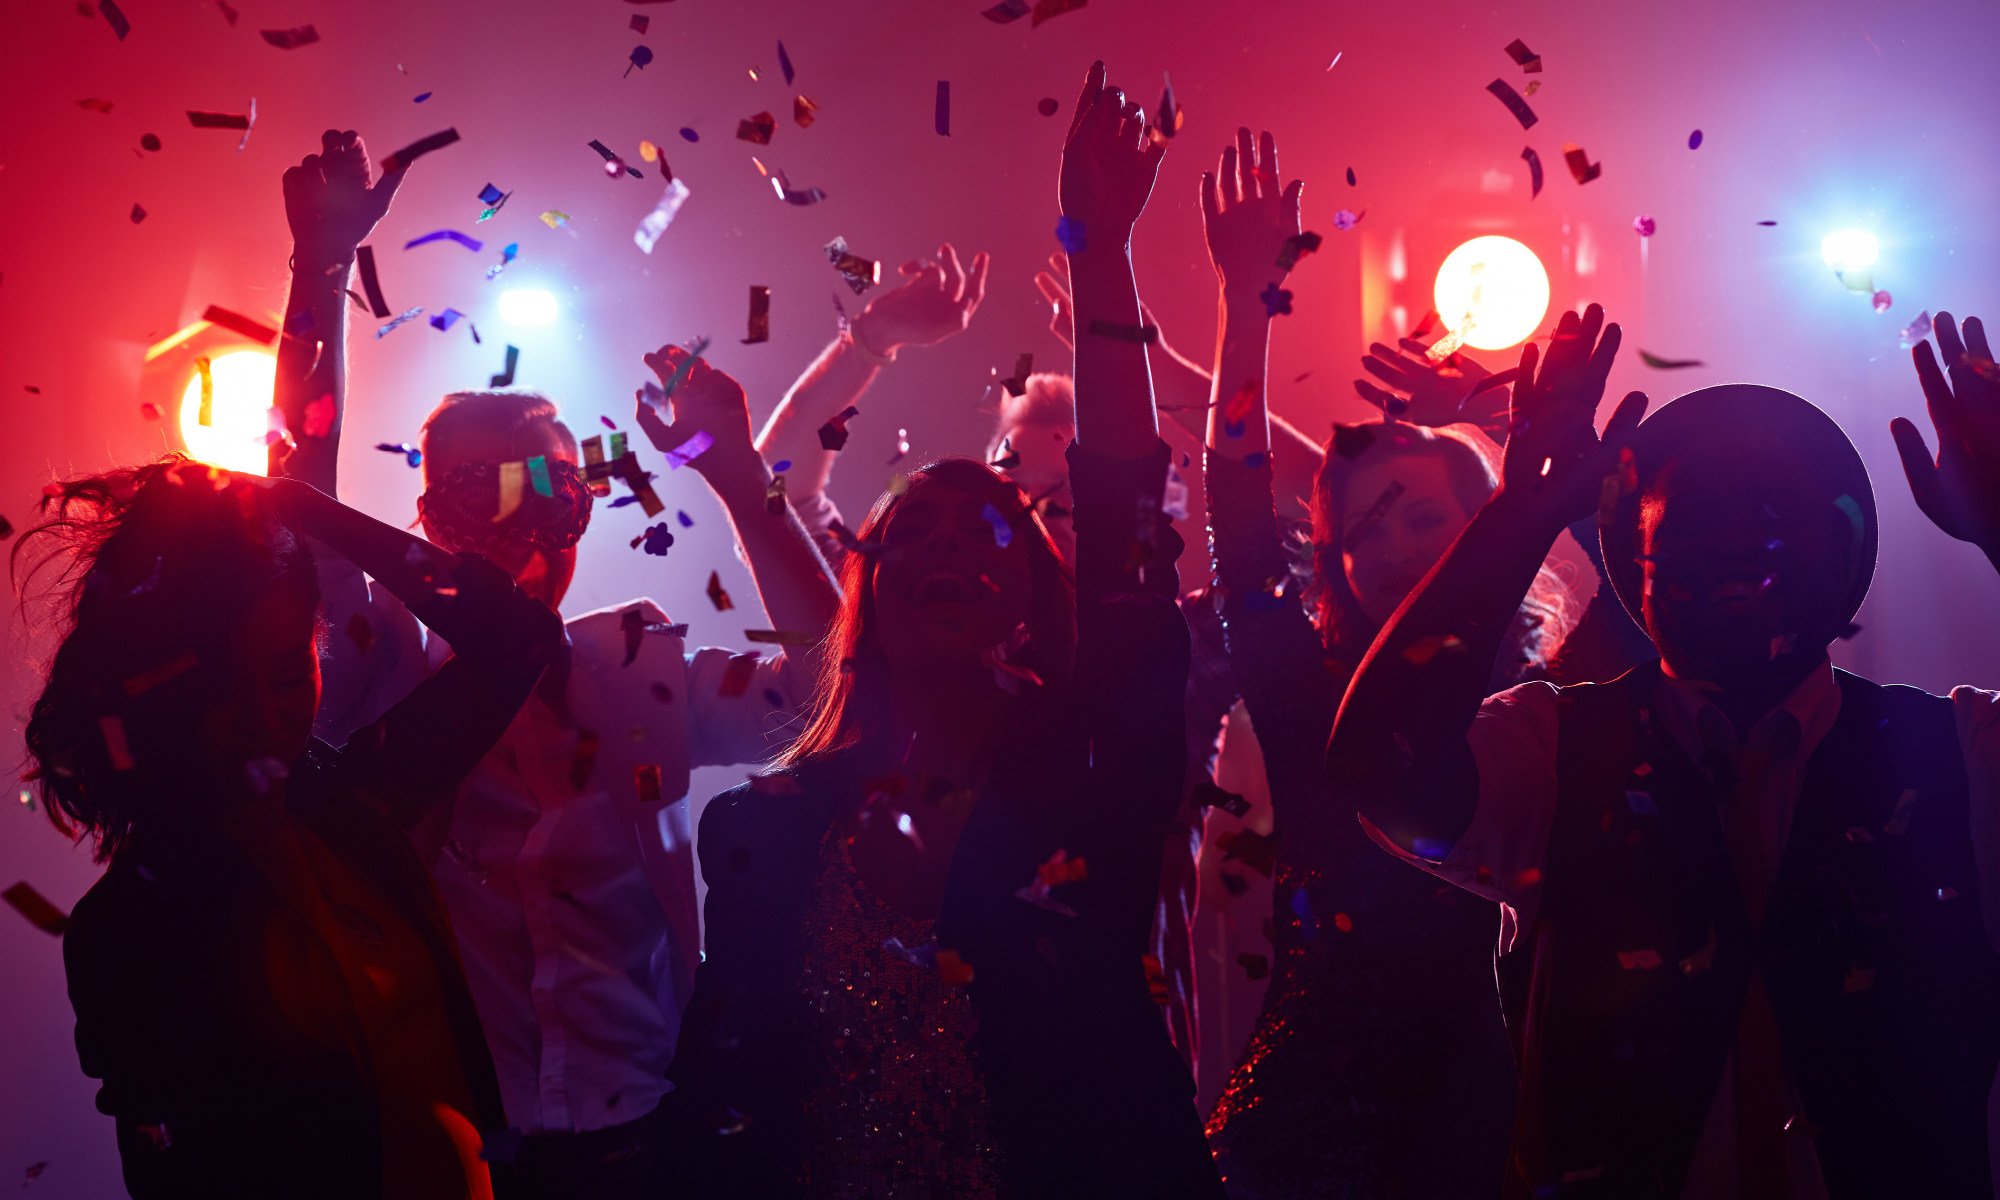 Un gruppo di amici balla in discoteca con luci soffuse e coriandoli colorati che volano per la sala.